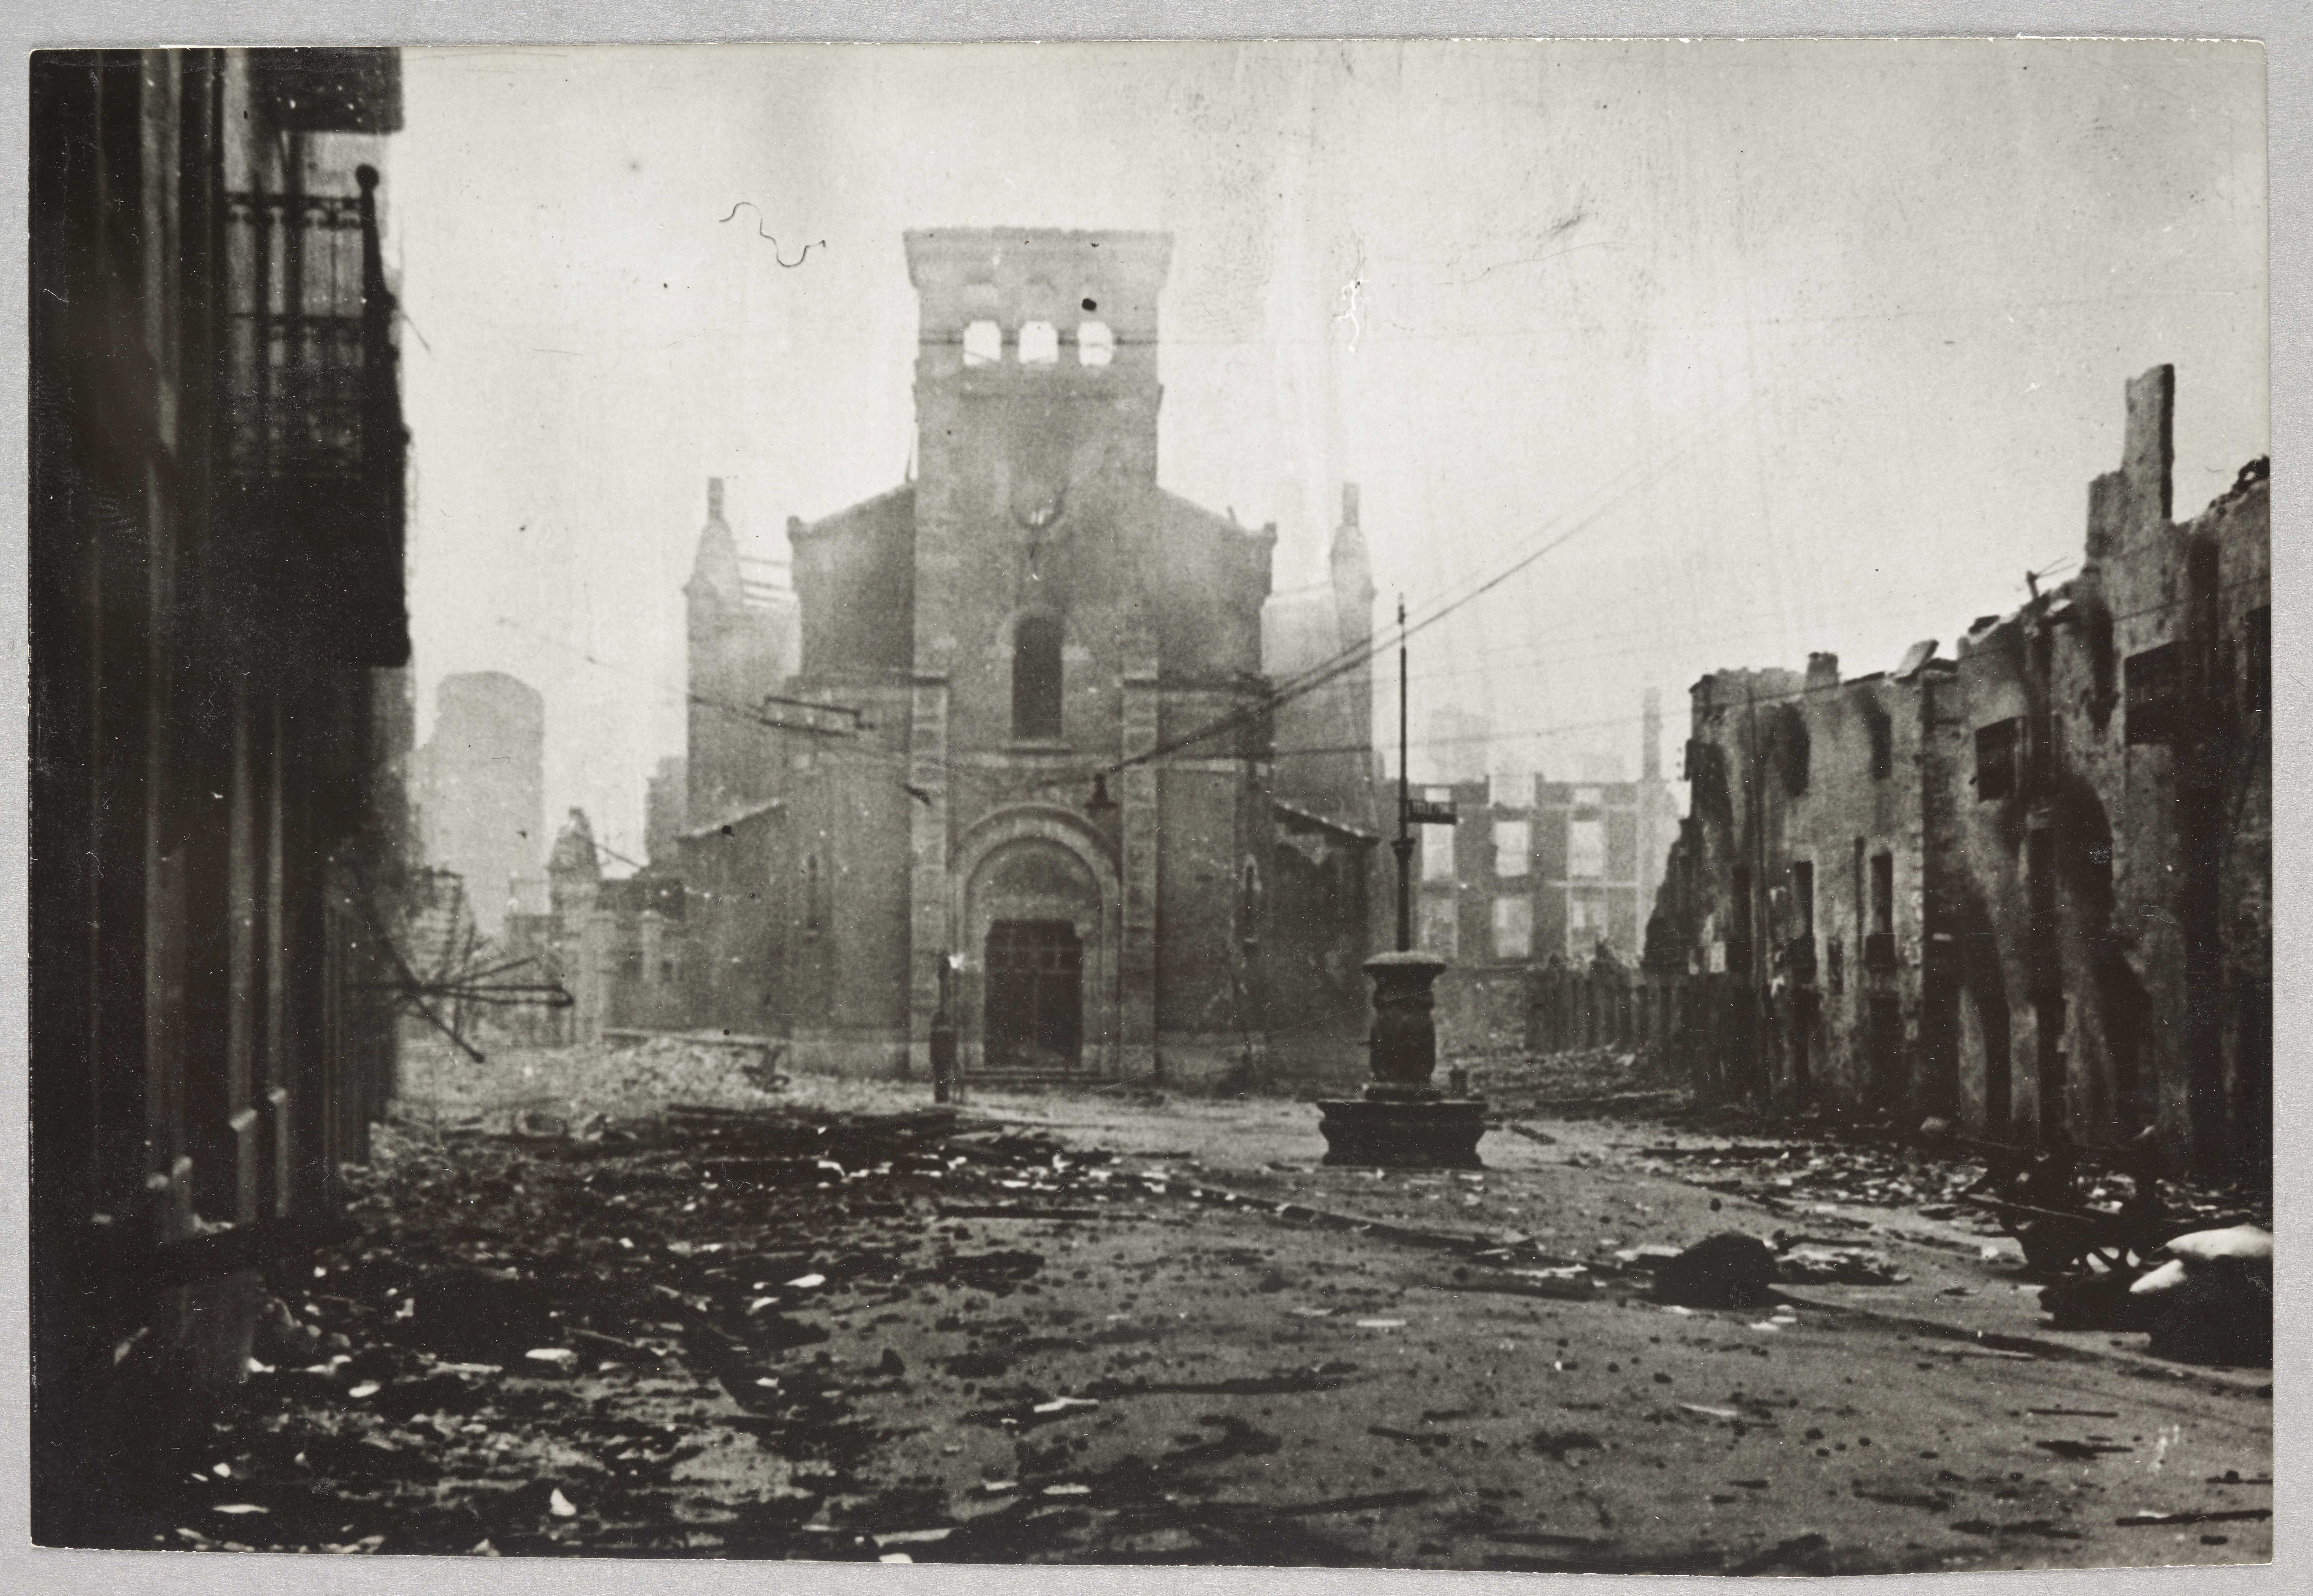 Anonyme, La ville de Guernica en ruines après le bombardement du 26 avril 1937, Paris